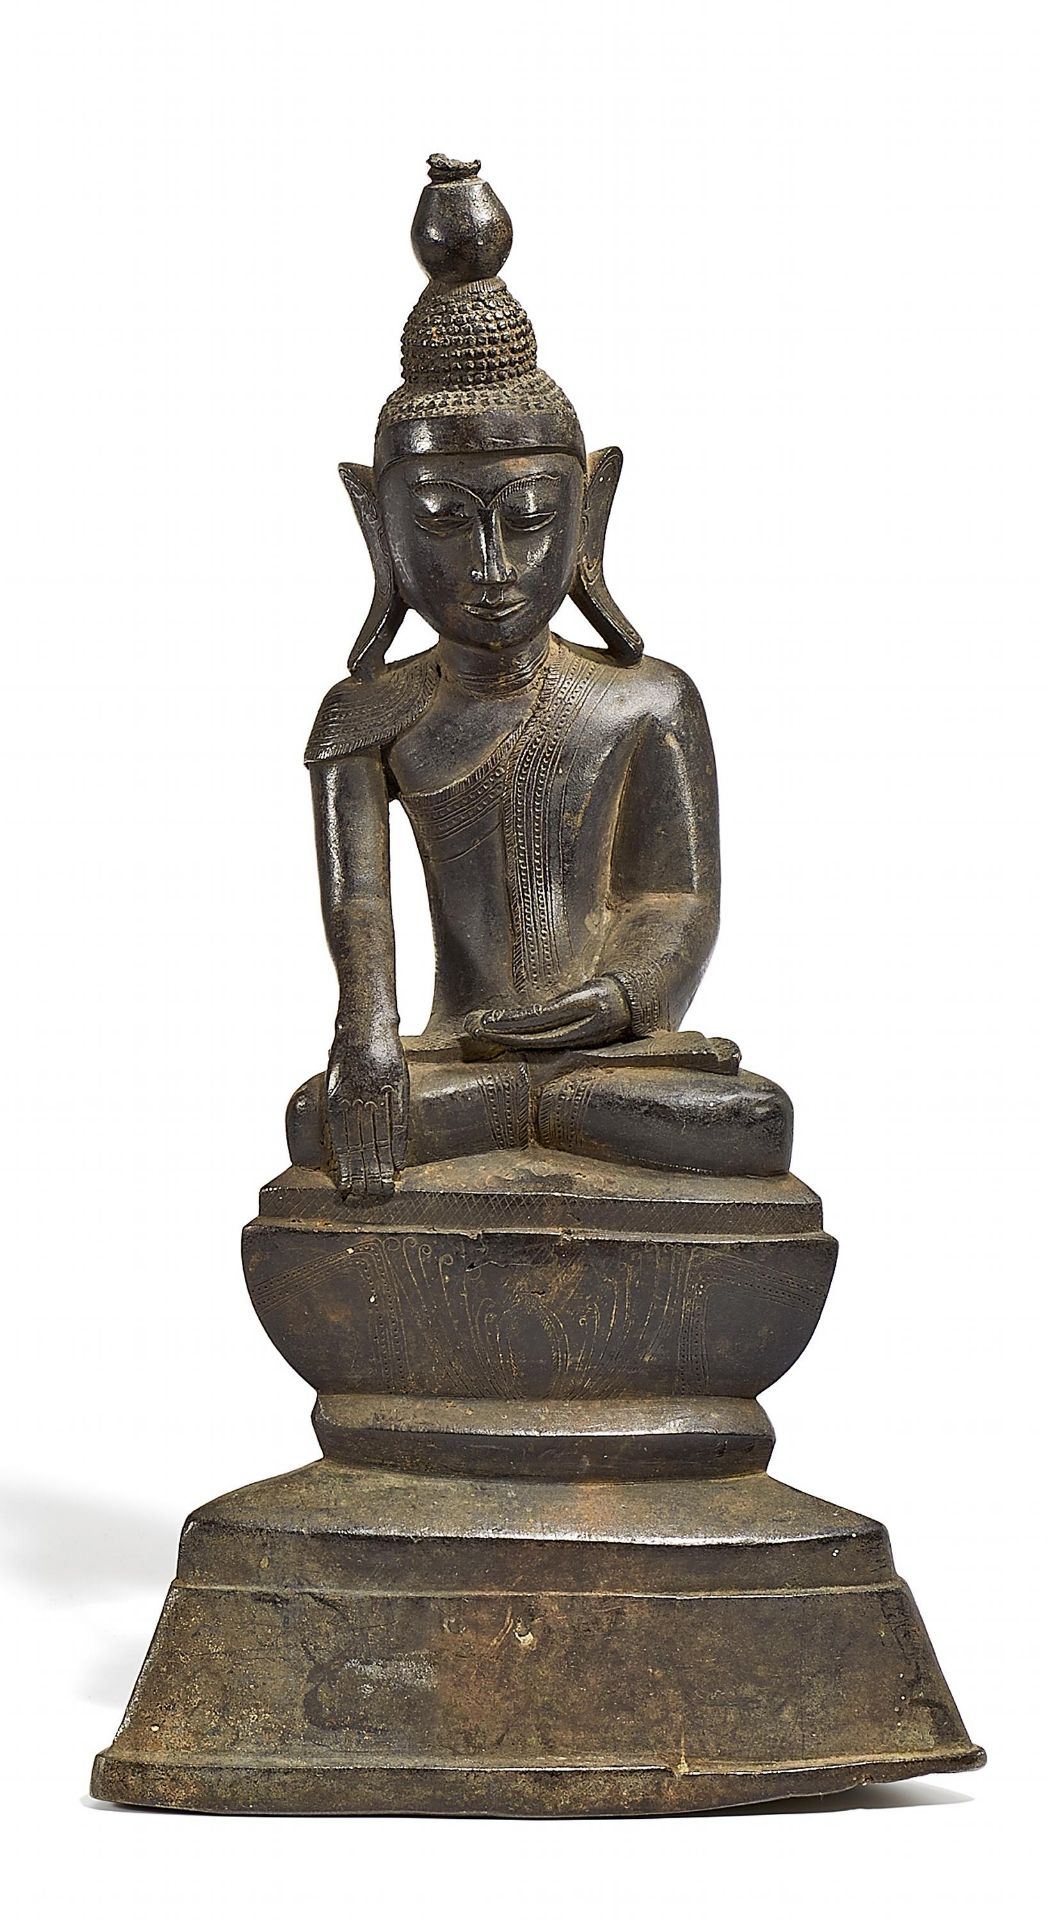 BUDDHA AUF HOHEM SOCKEL. Burma/Myanmar. Shan-Stil. 17. Jh. Bronze mit fein gravierten Gewandborten